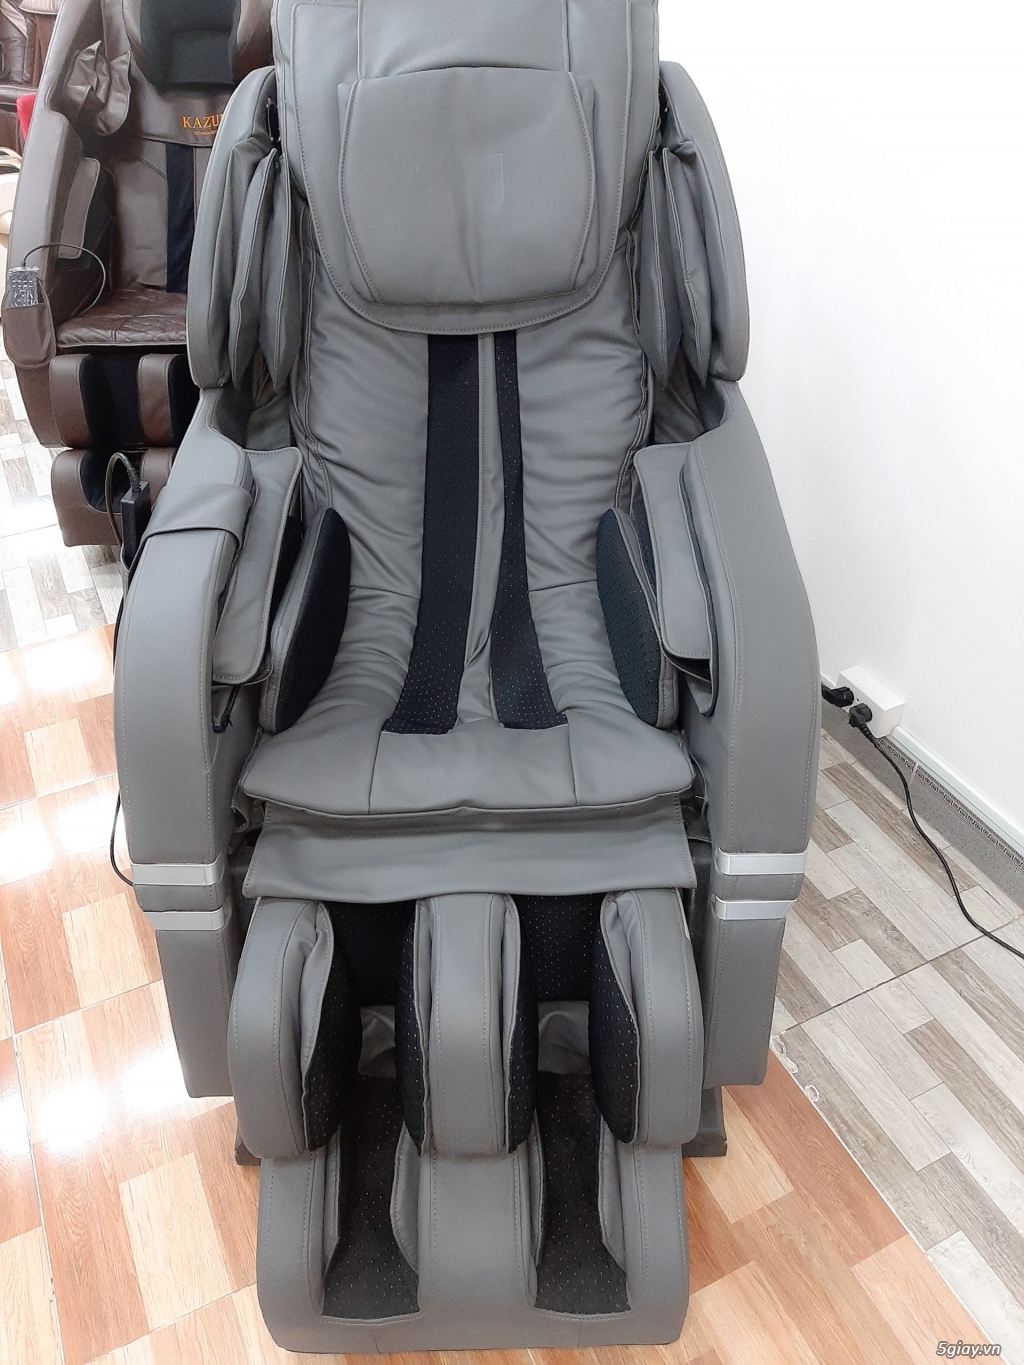 Thanh lí ghế massage trưng bày tại cửa hàng